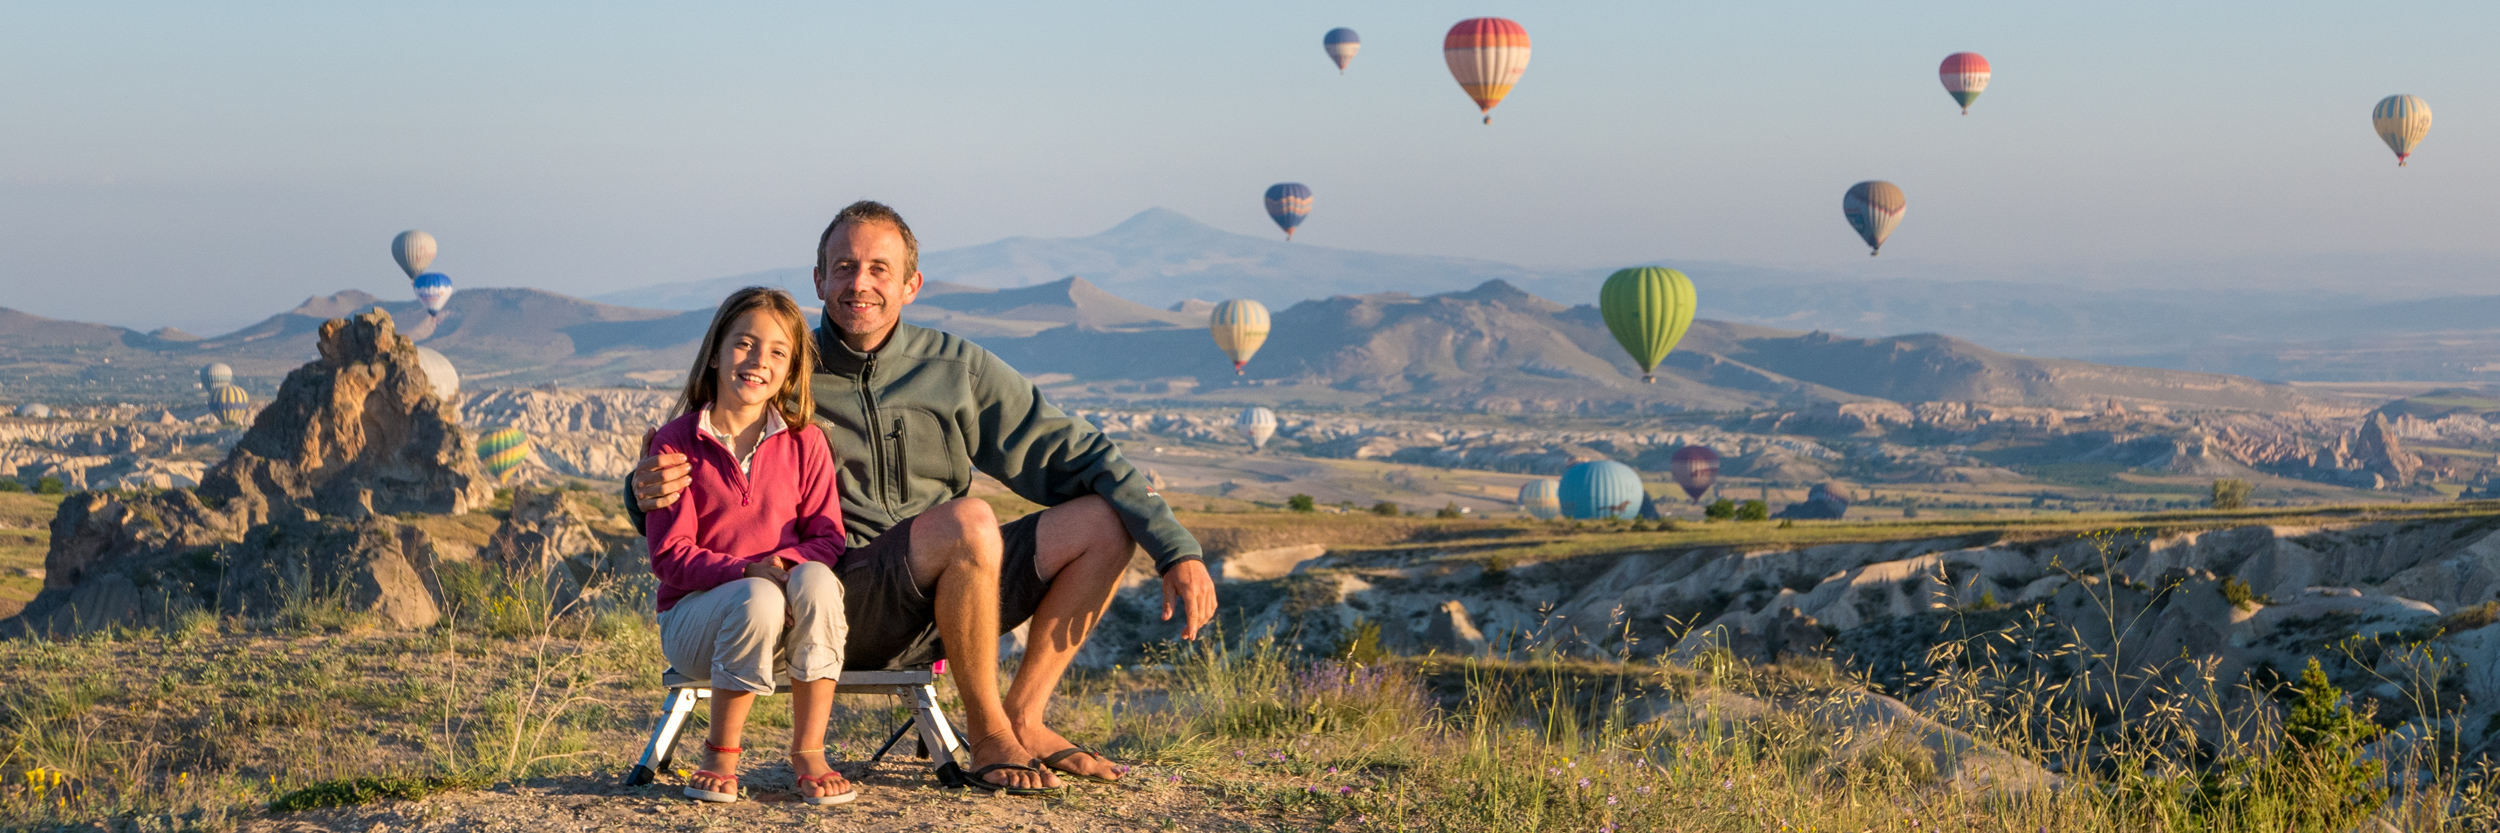 La magie des montgolfières en Cappadoce // Turquie